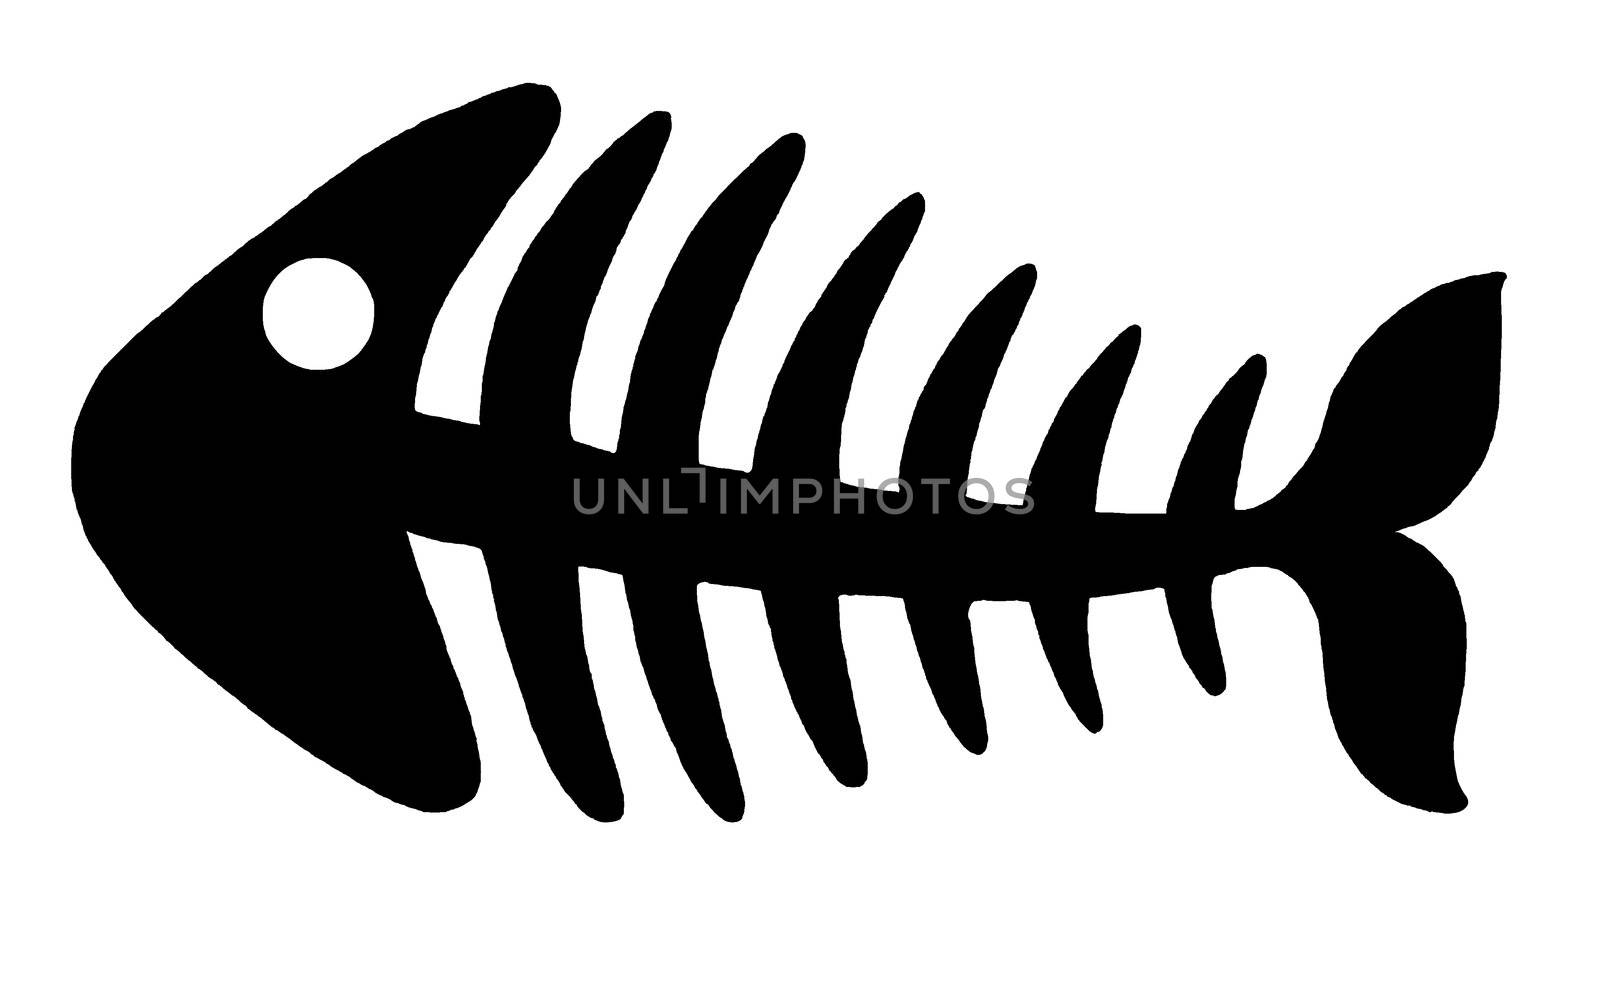 Illustration of black fishbone on white background.